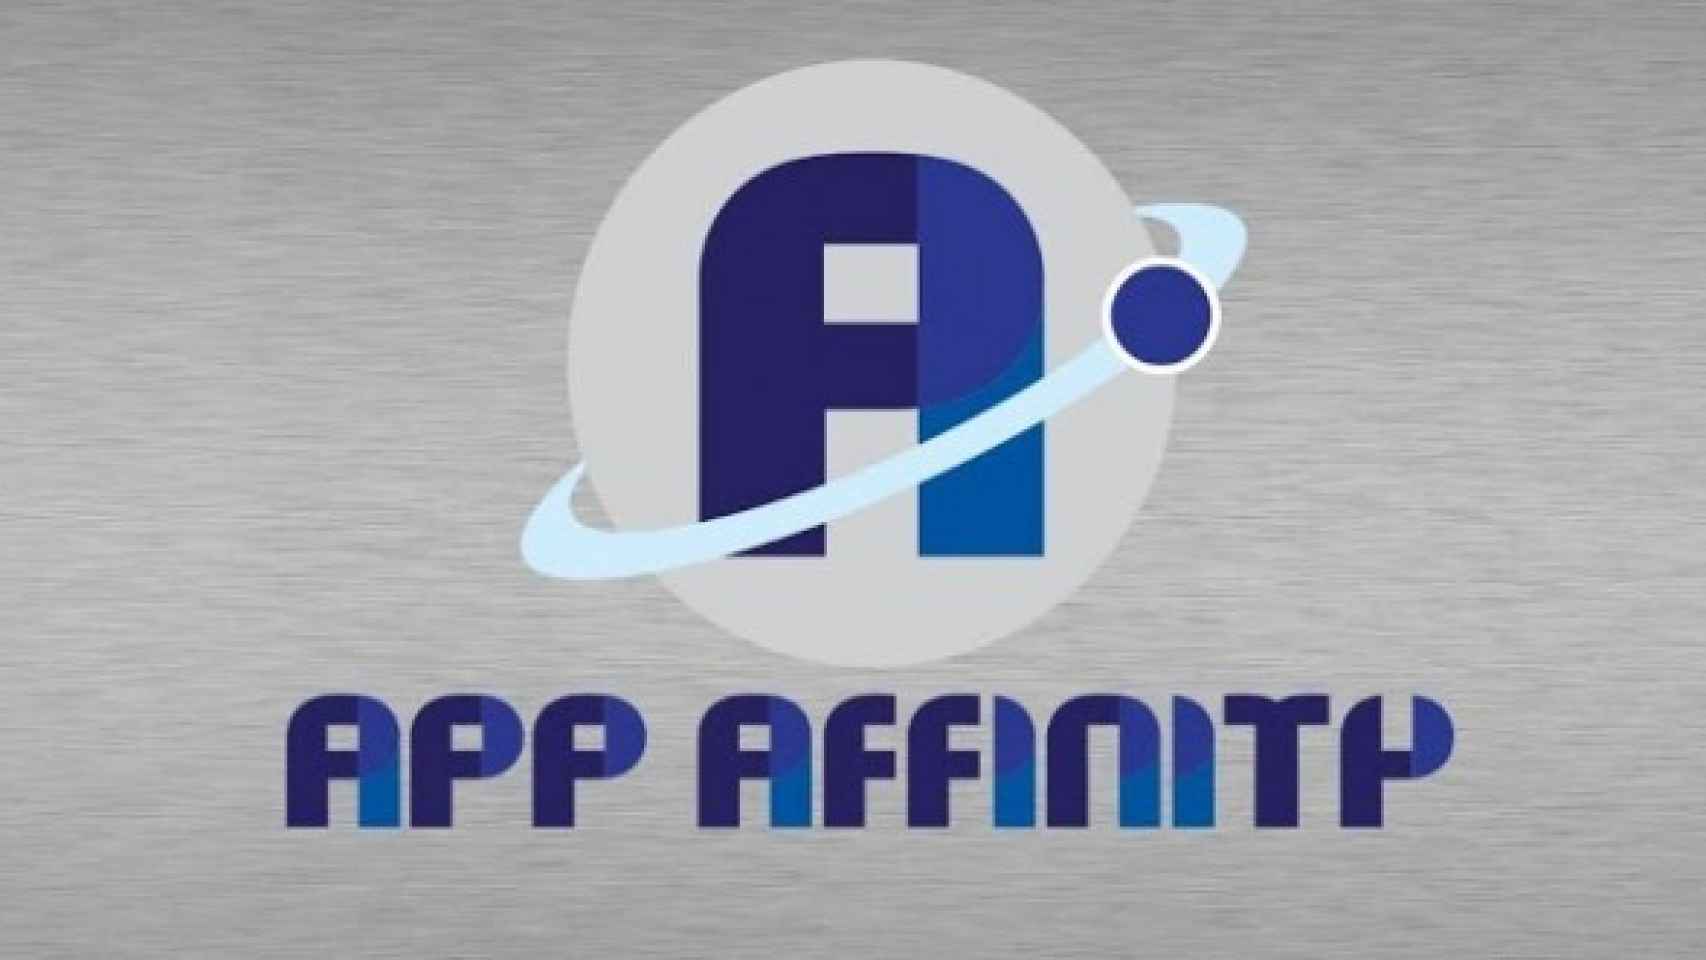 Mejora las recomendaciones de Google Play con AppAffinity